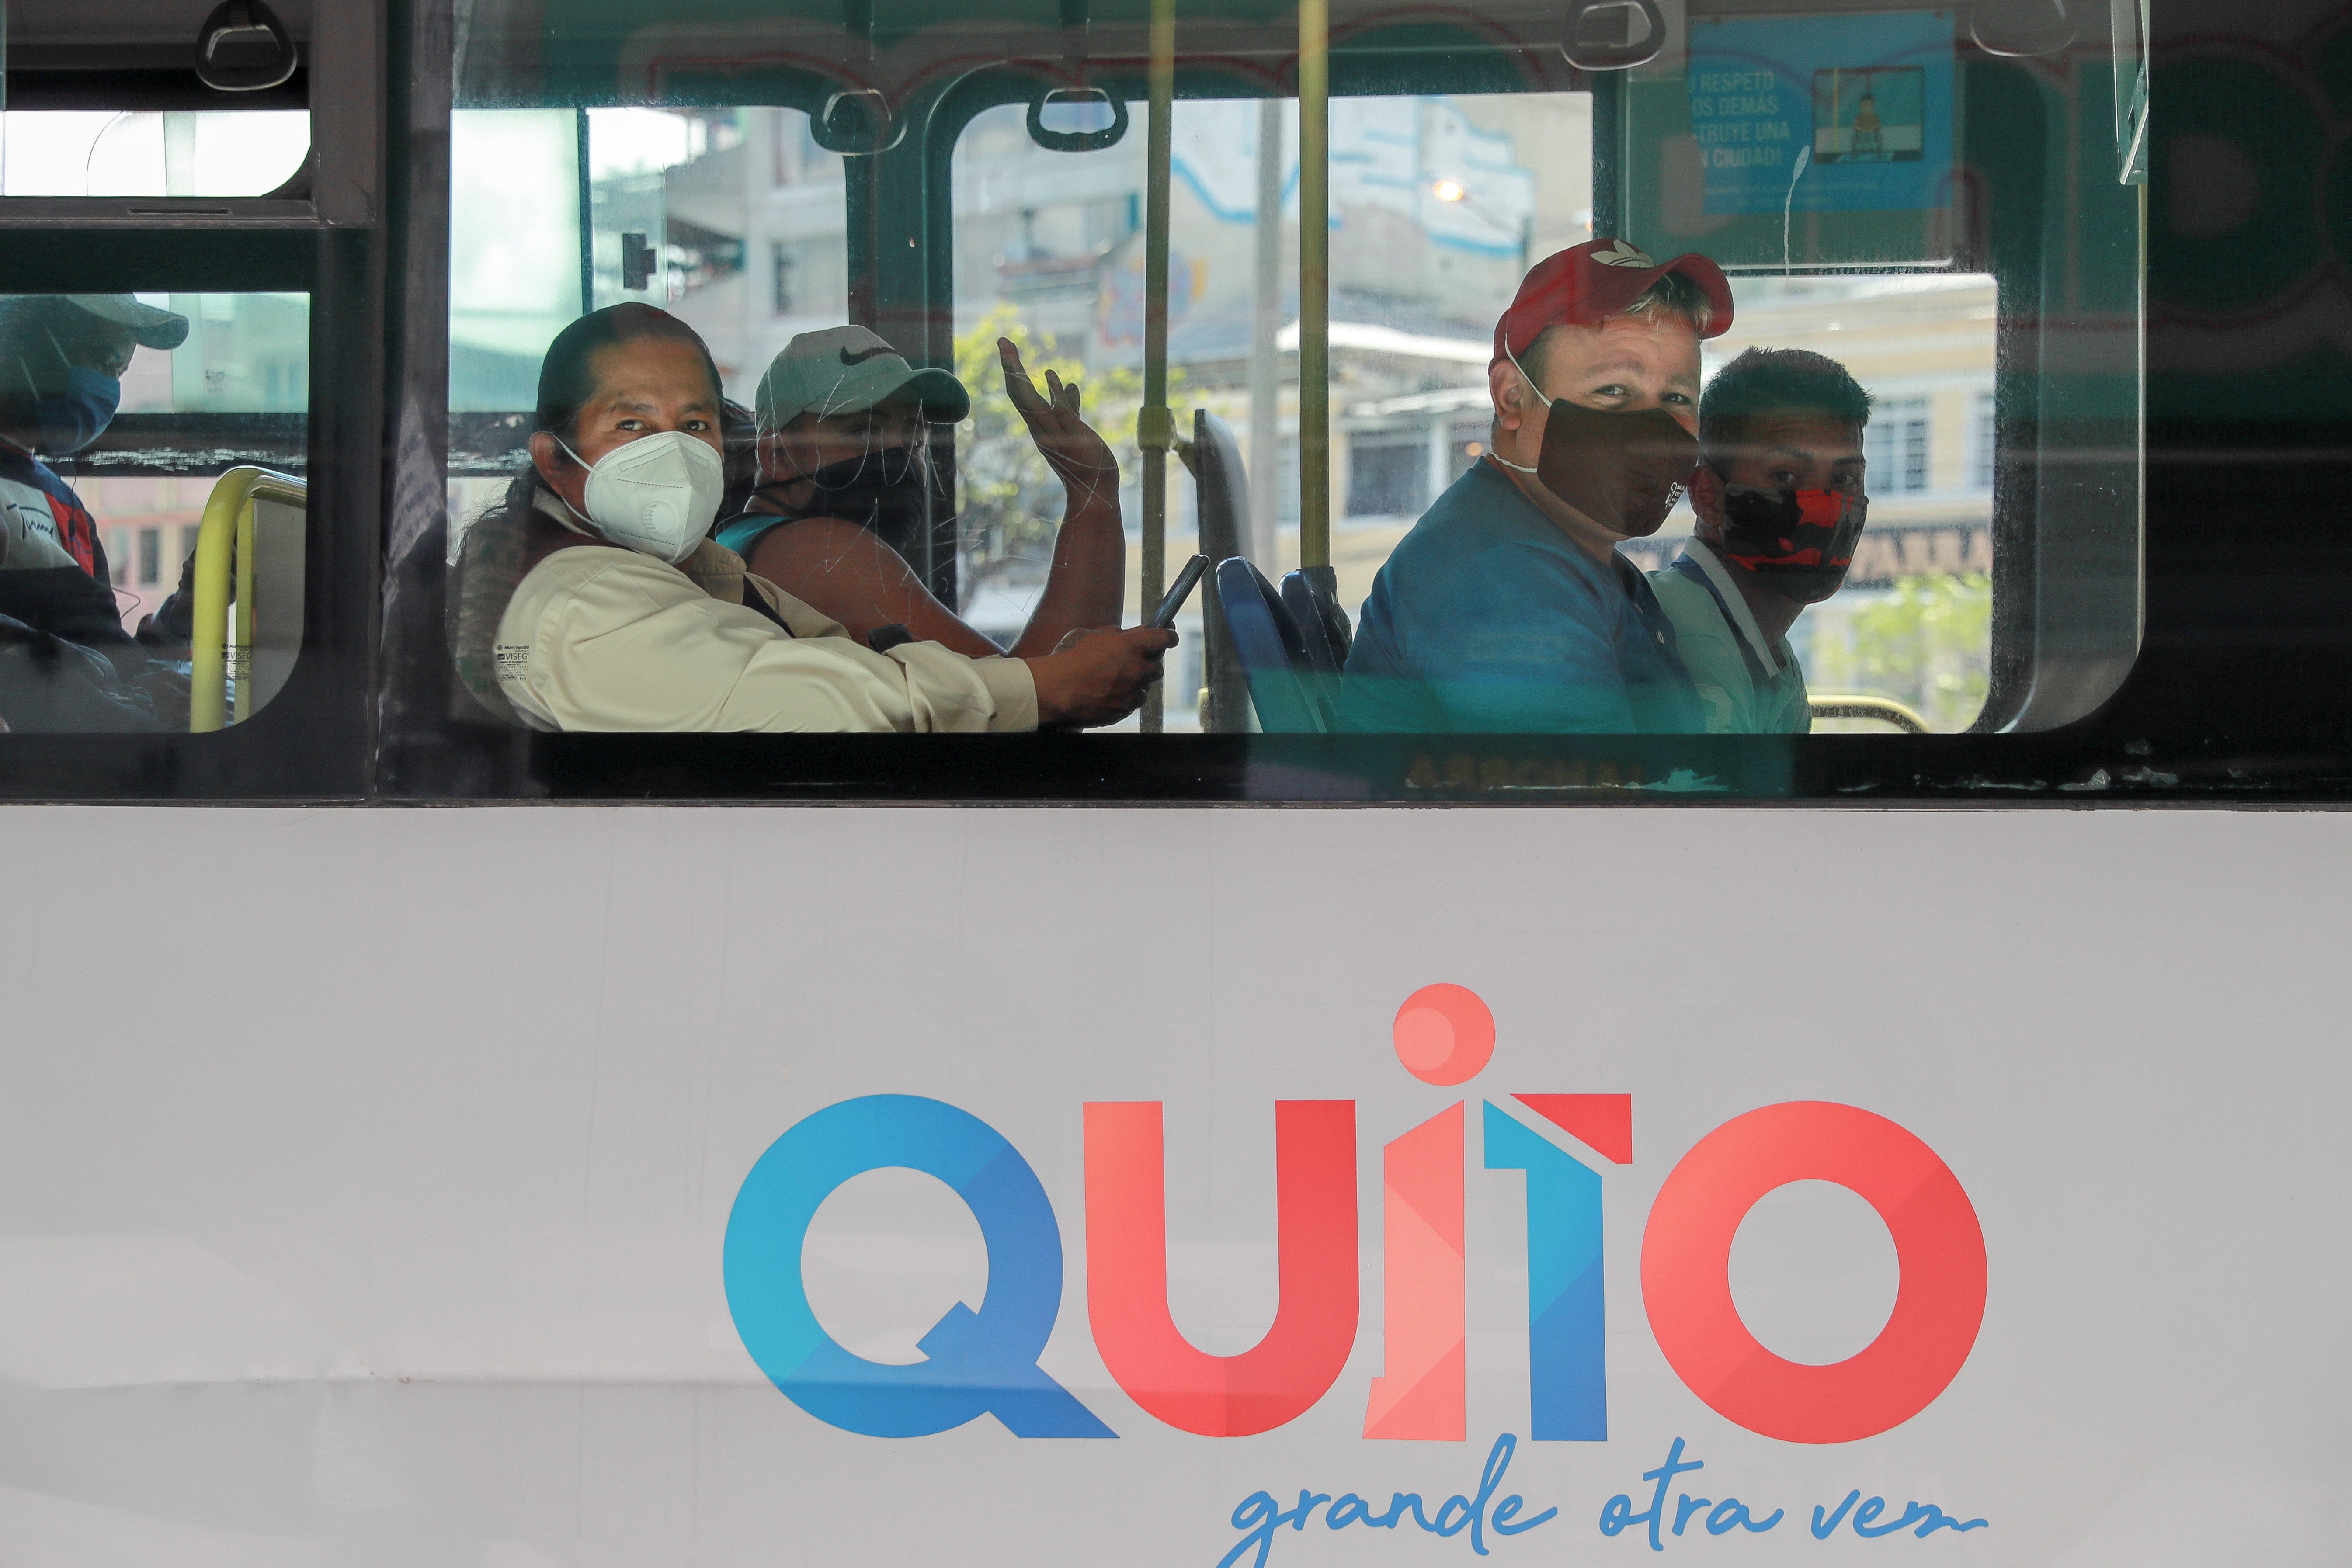 Foto de archivo: Ciudadanos ecuatorianos usan tapabocas mientras se movilizan en transporte publico en Quito (EFE/José Jácome)